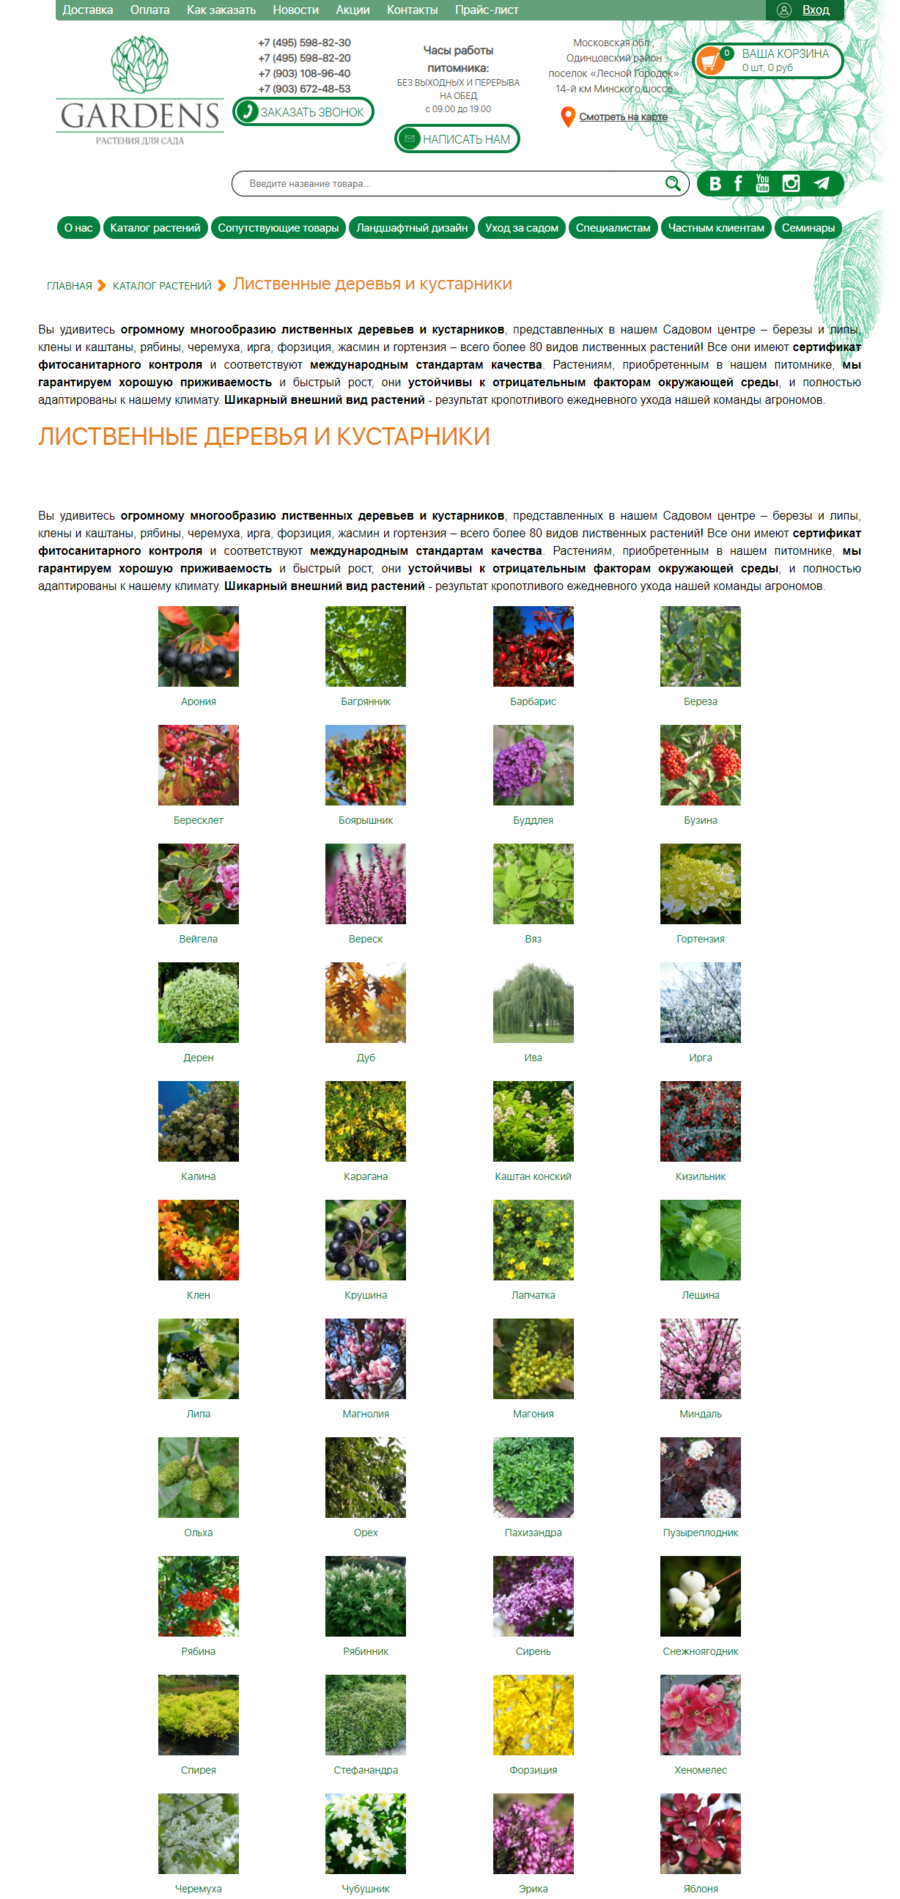 Фотографии видов растений в каталоге помогают покупателю легко ориентироваться в каталоге